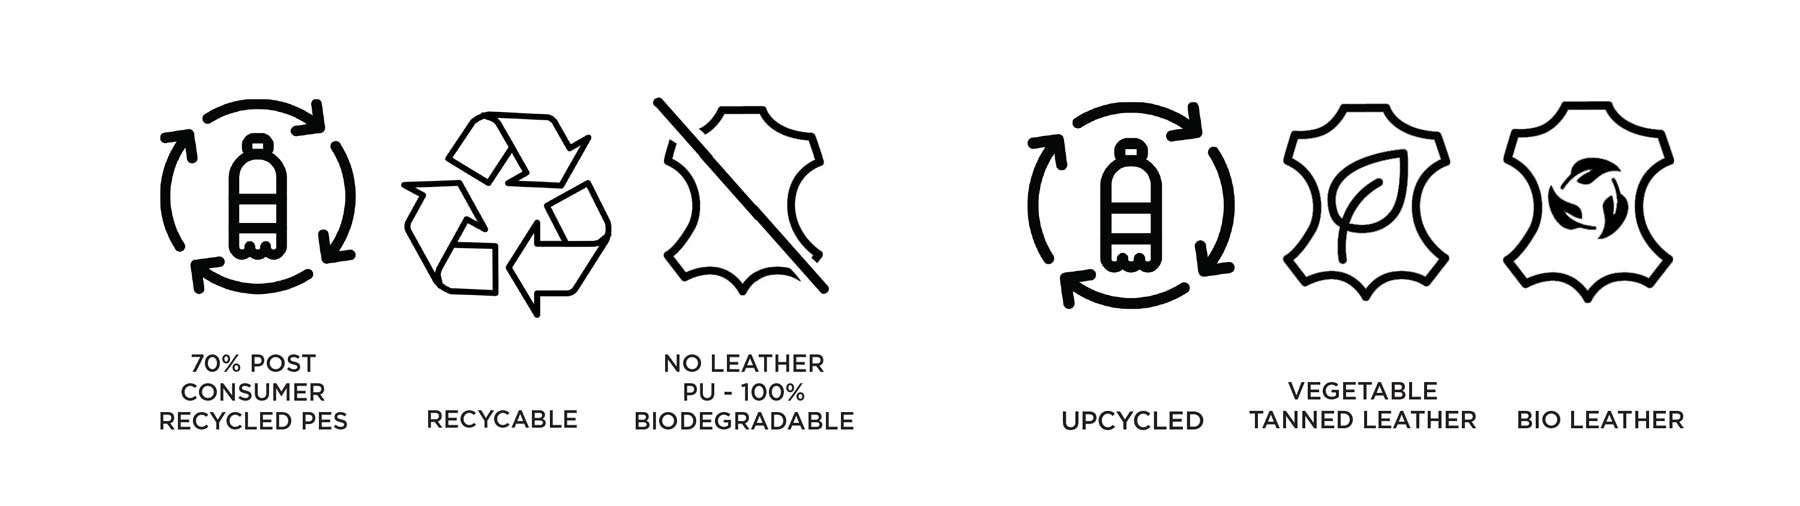 symbols-sustainability-brand